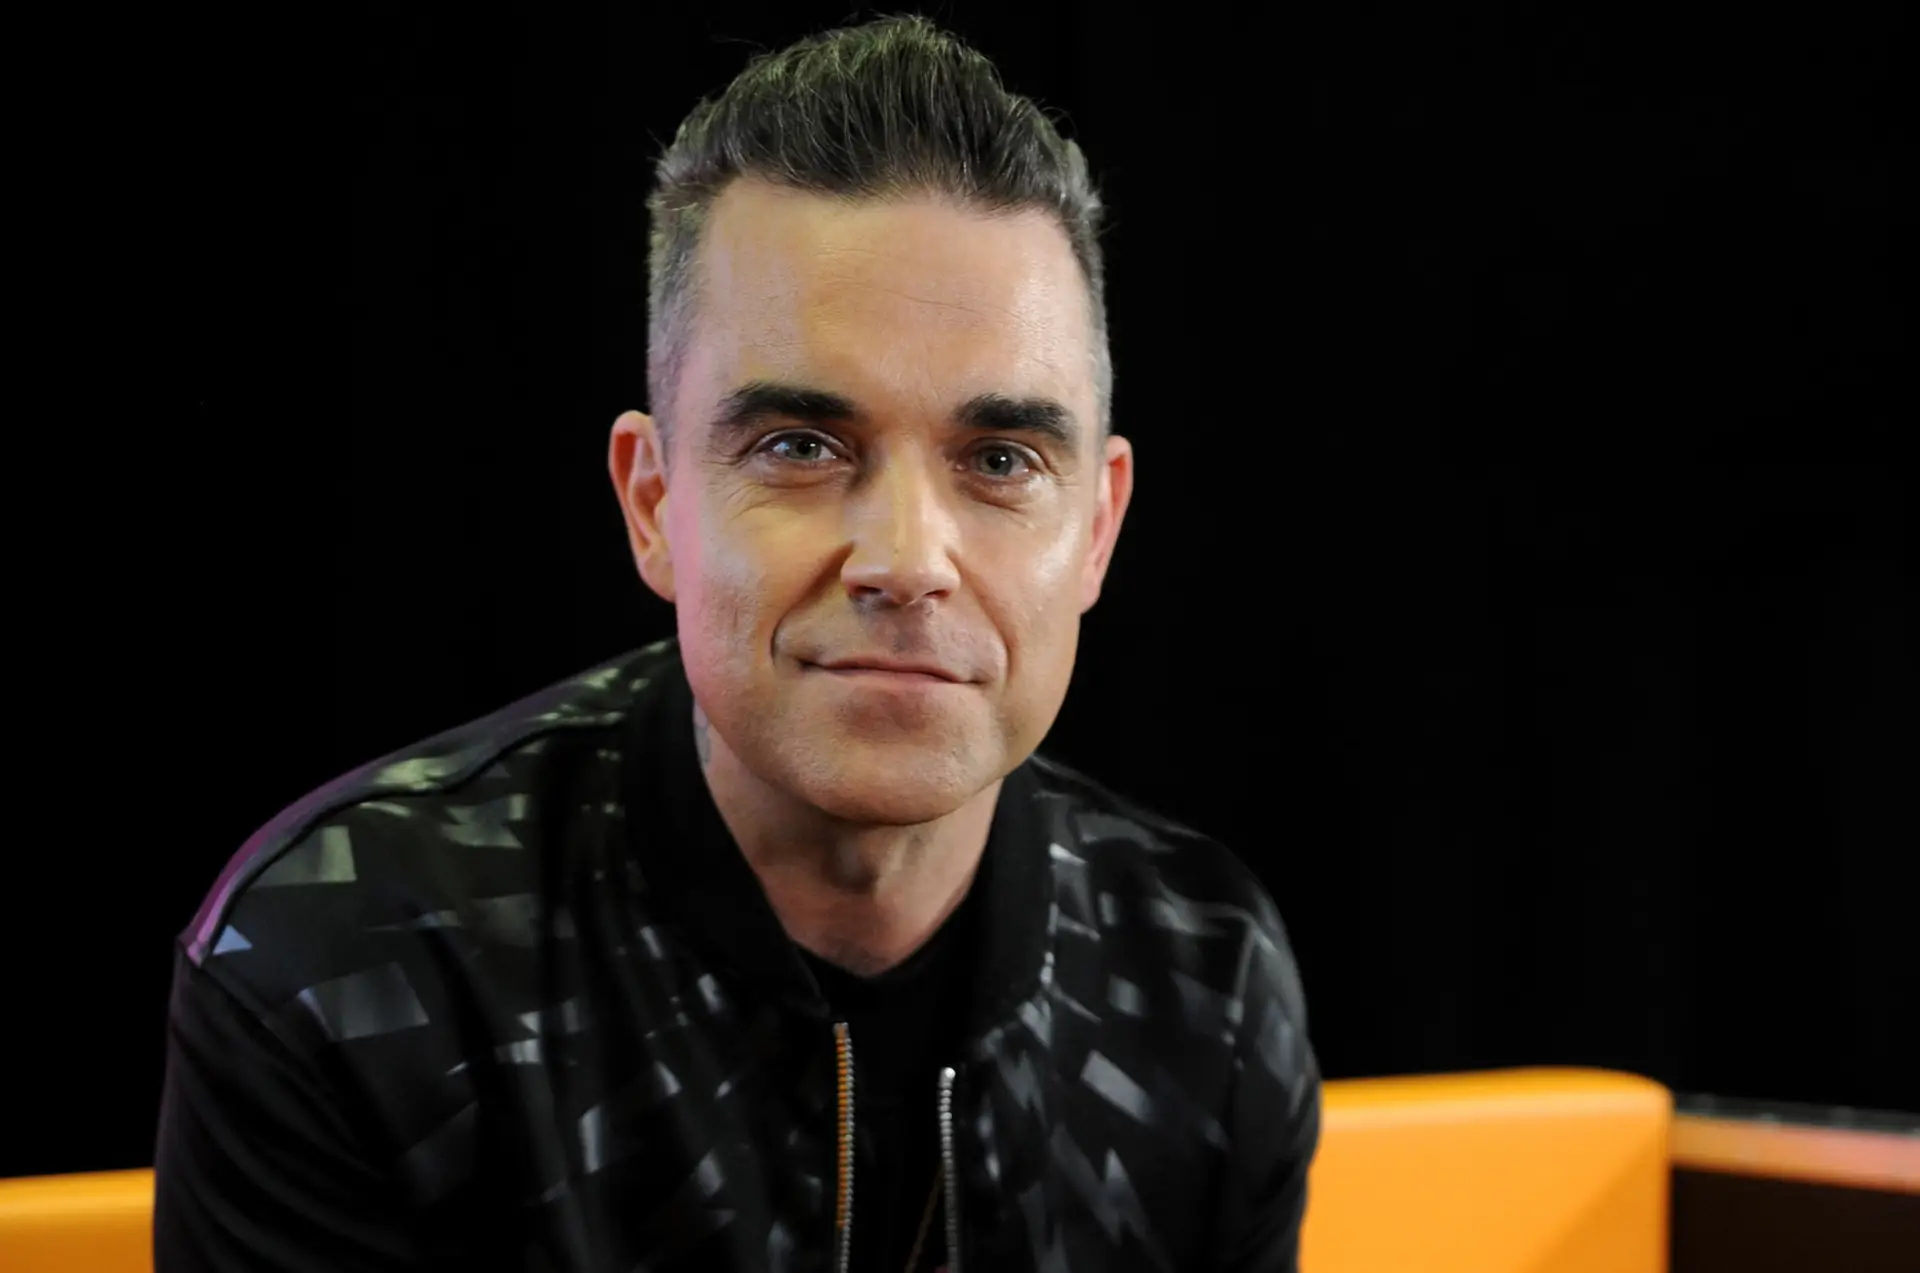 Robbie Williams discursa sobre saúde mental em concerto: “Durante três anos, fiquei alapado no sofá a comer batatas fritas e donuts”